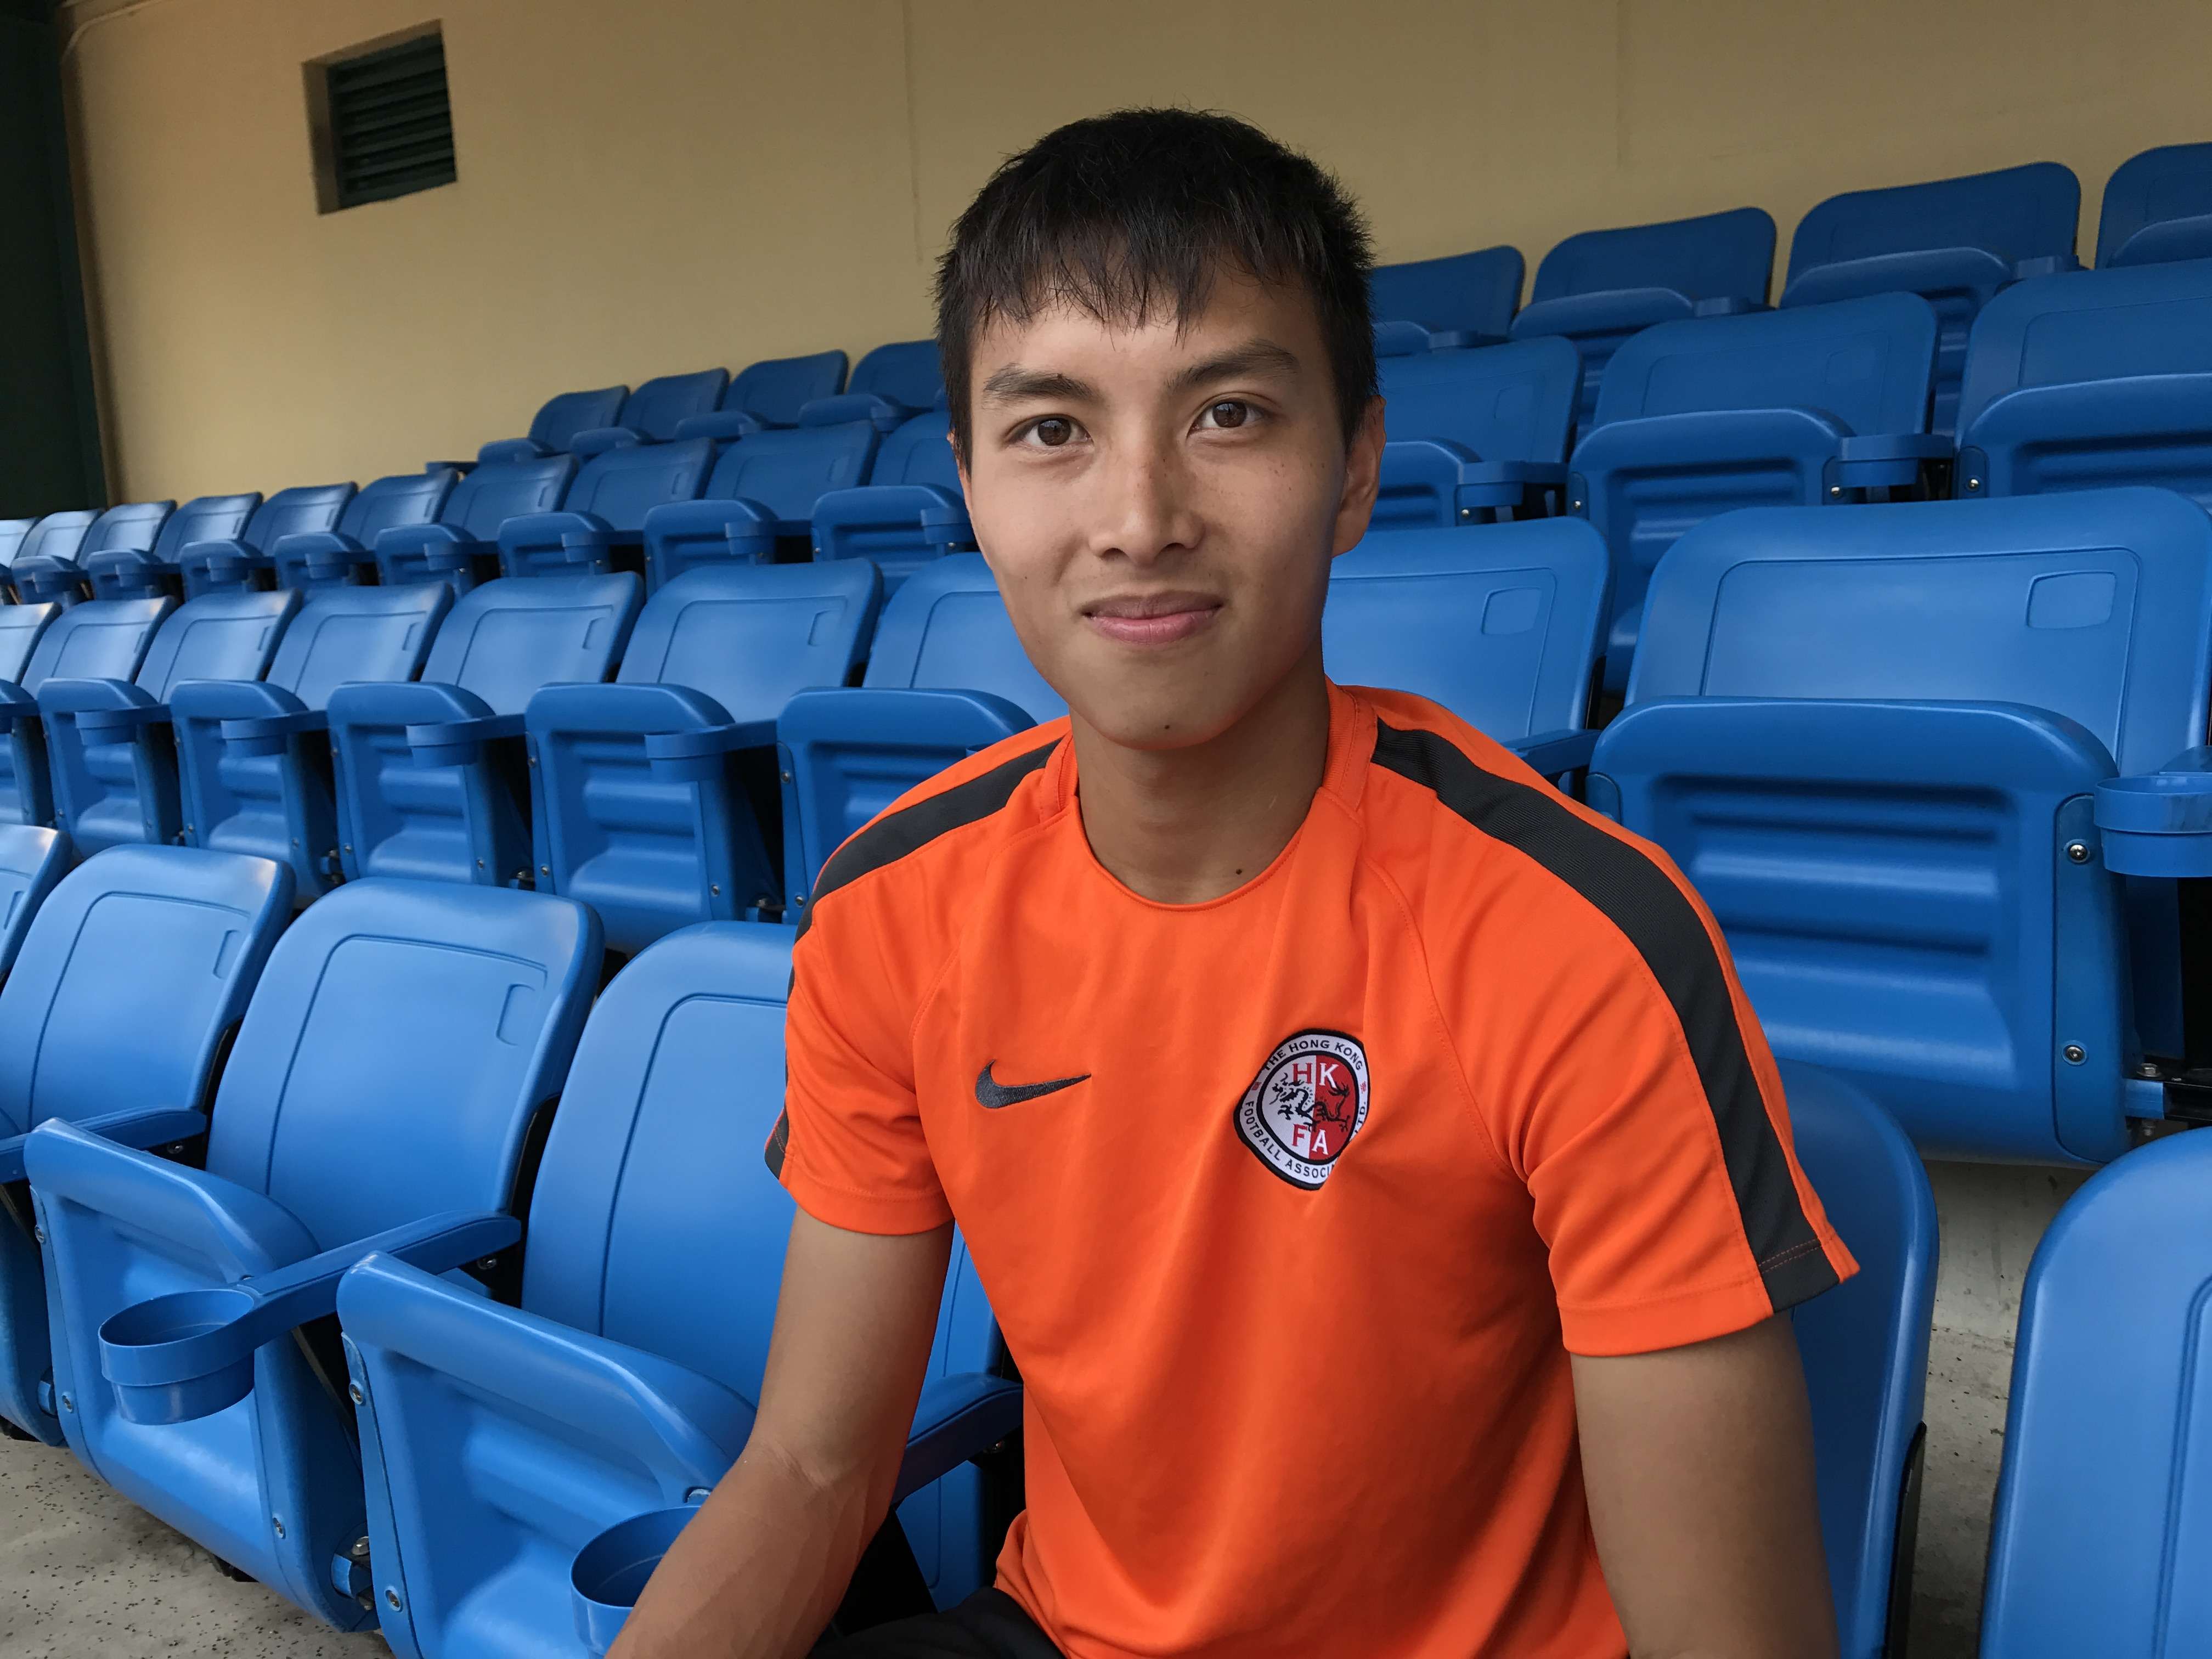 Eastern footballer Wong Tsz-ho. Photo: Handout